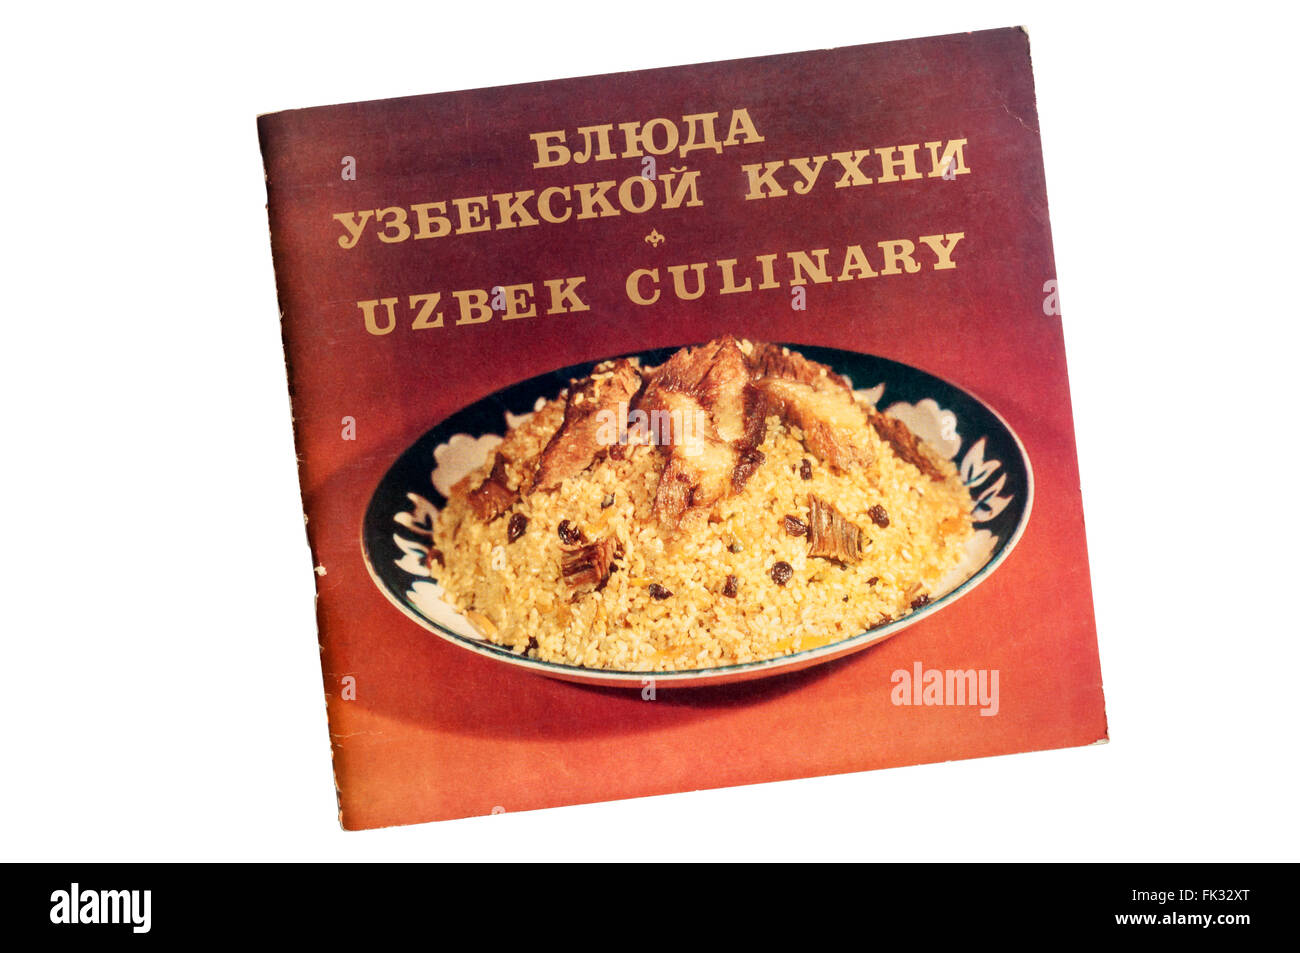 Uzbek Culinary, a cookery book of Uzbek recipes from Uzbekistan. Stock Photo